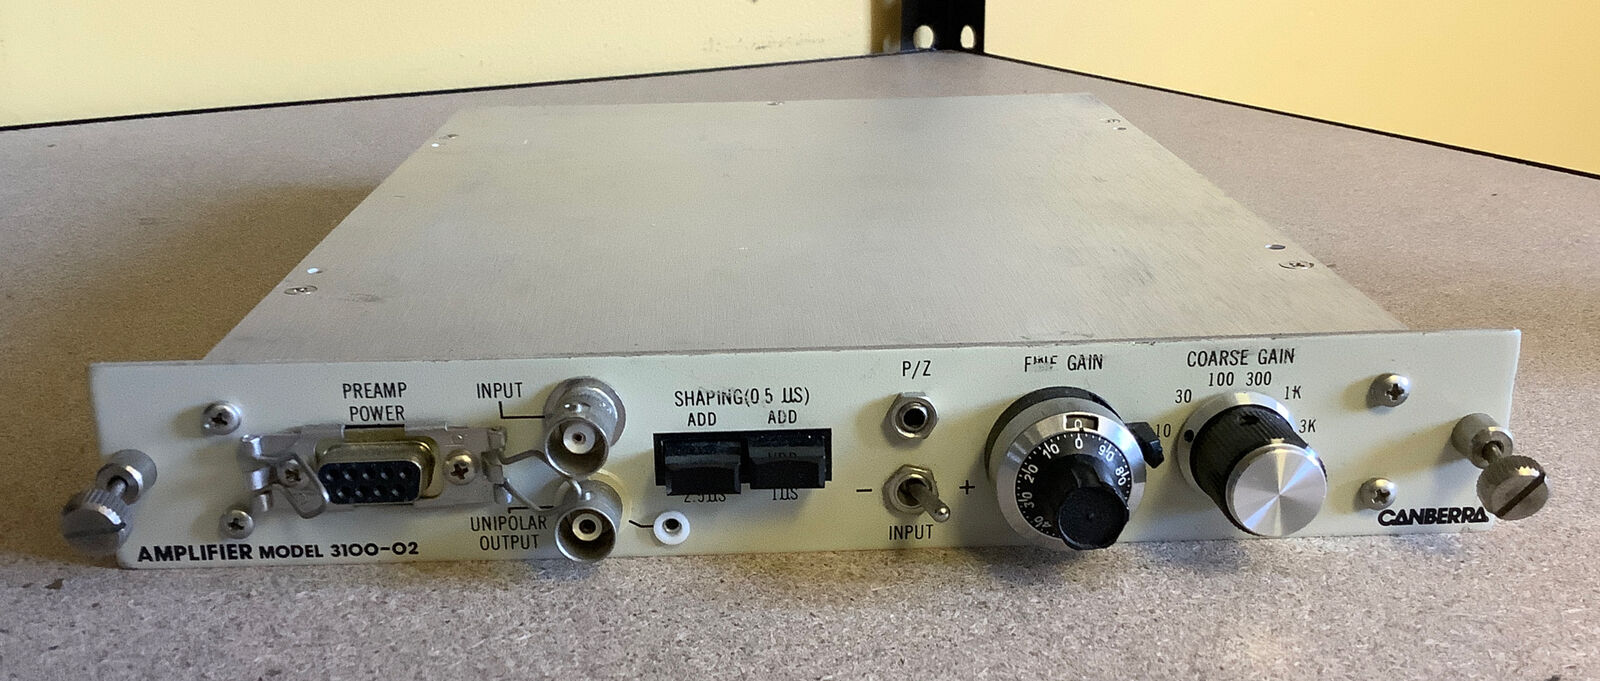 Canberra Amplifier Model 3100-02